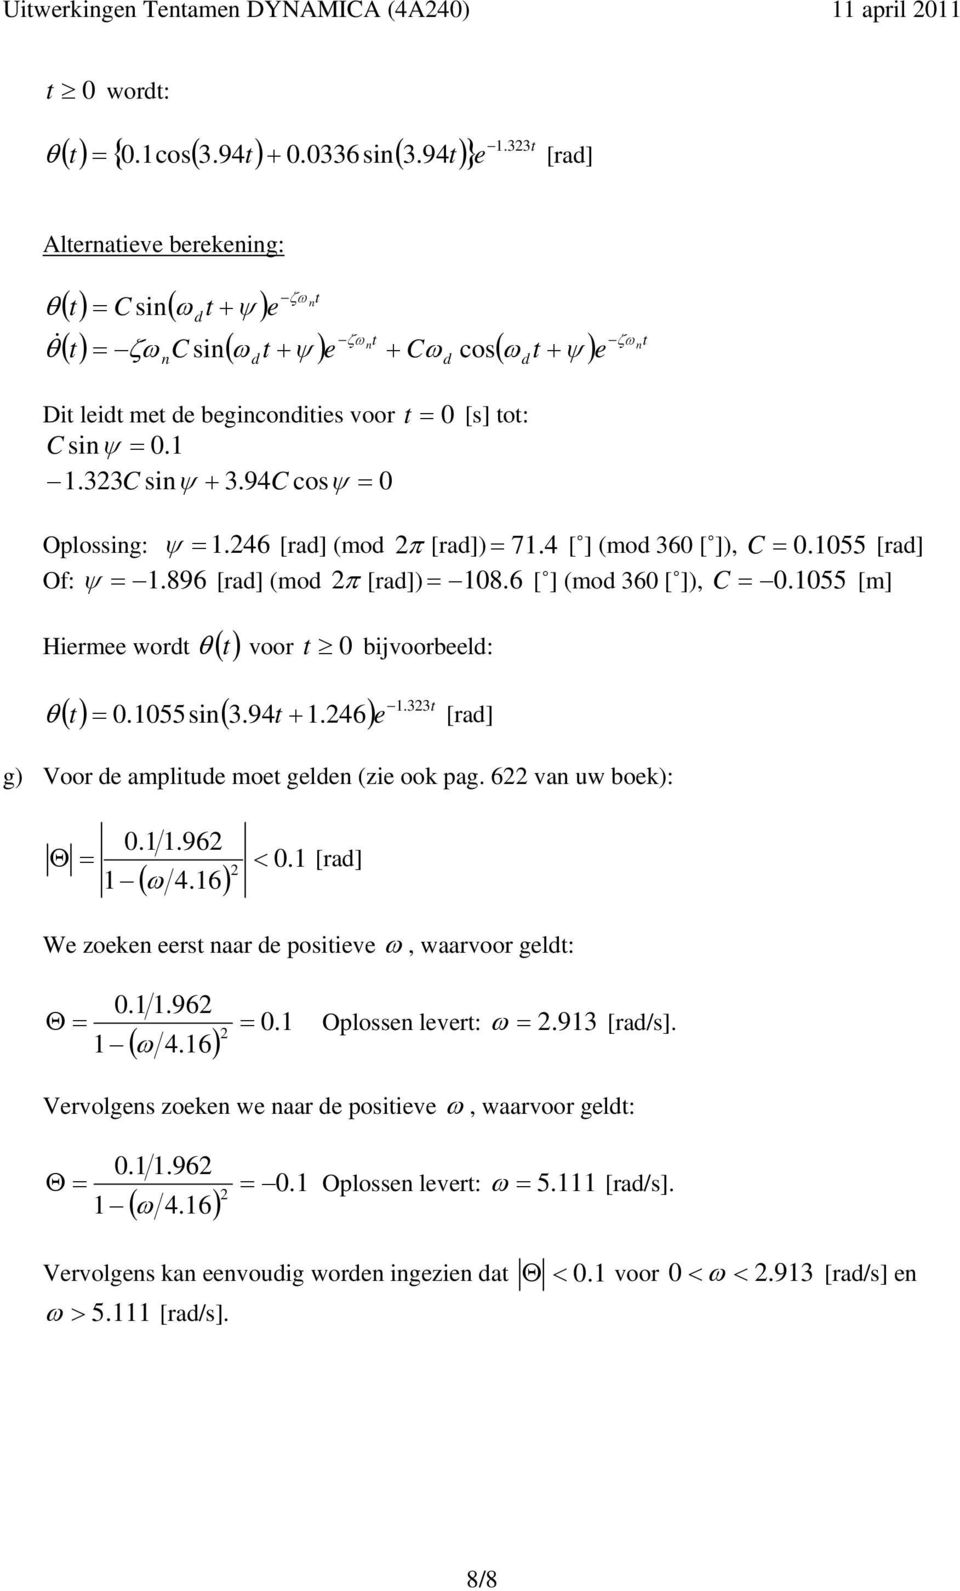 94C cosψ 0 Oplossing: ψ. 46 [a] (mo π [a]) 7. 4 [ ] (mo 60 [ ]), C 0. 055 [a] Of: ψ. 896 [a] (mo π [a]) 08. 6 [ ] (mo 60 [ ]), C 0. 055 [m] Hiemee wot ( t) voo t 0 bijvoobeel:.t () t 0.055sin(.94t +.